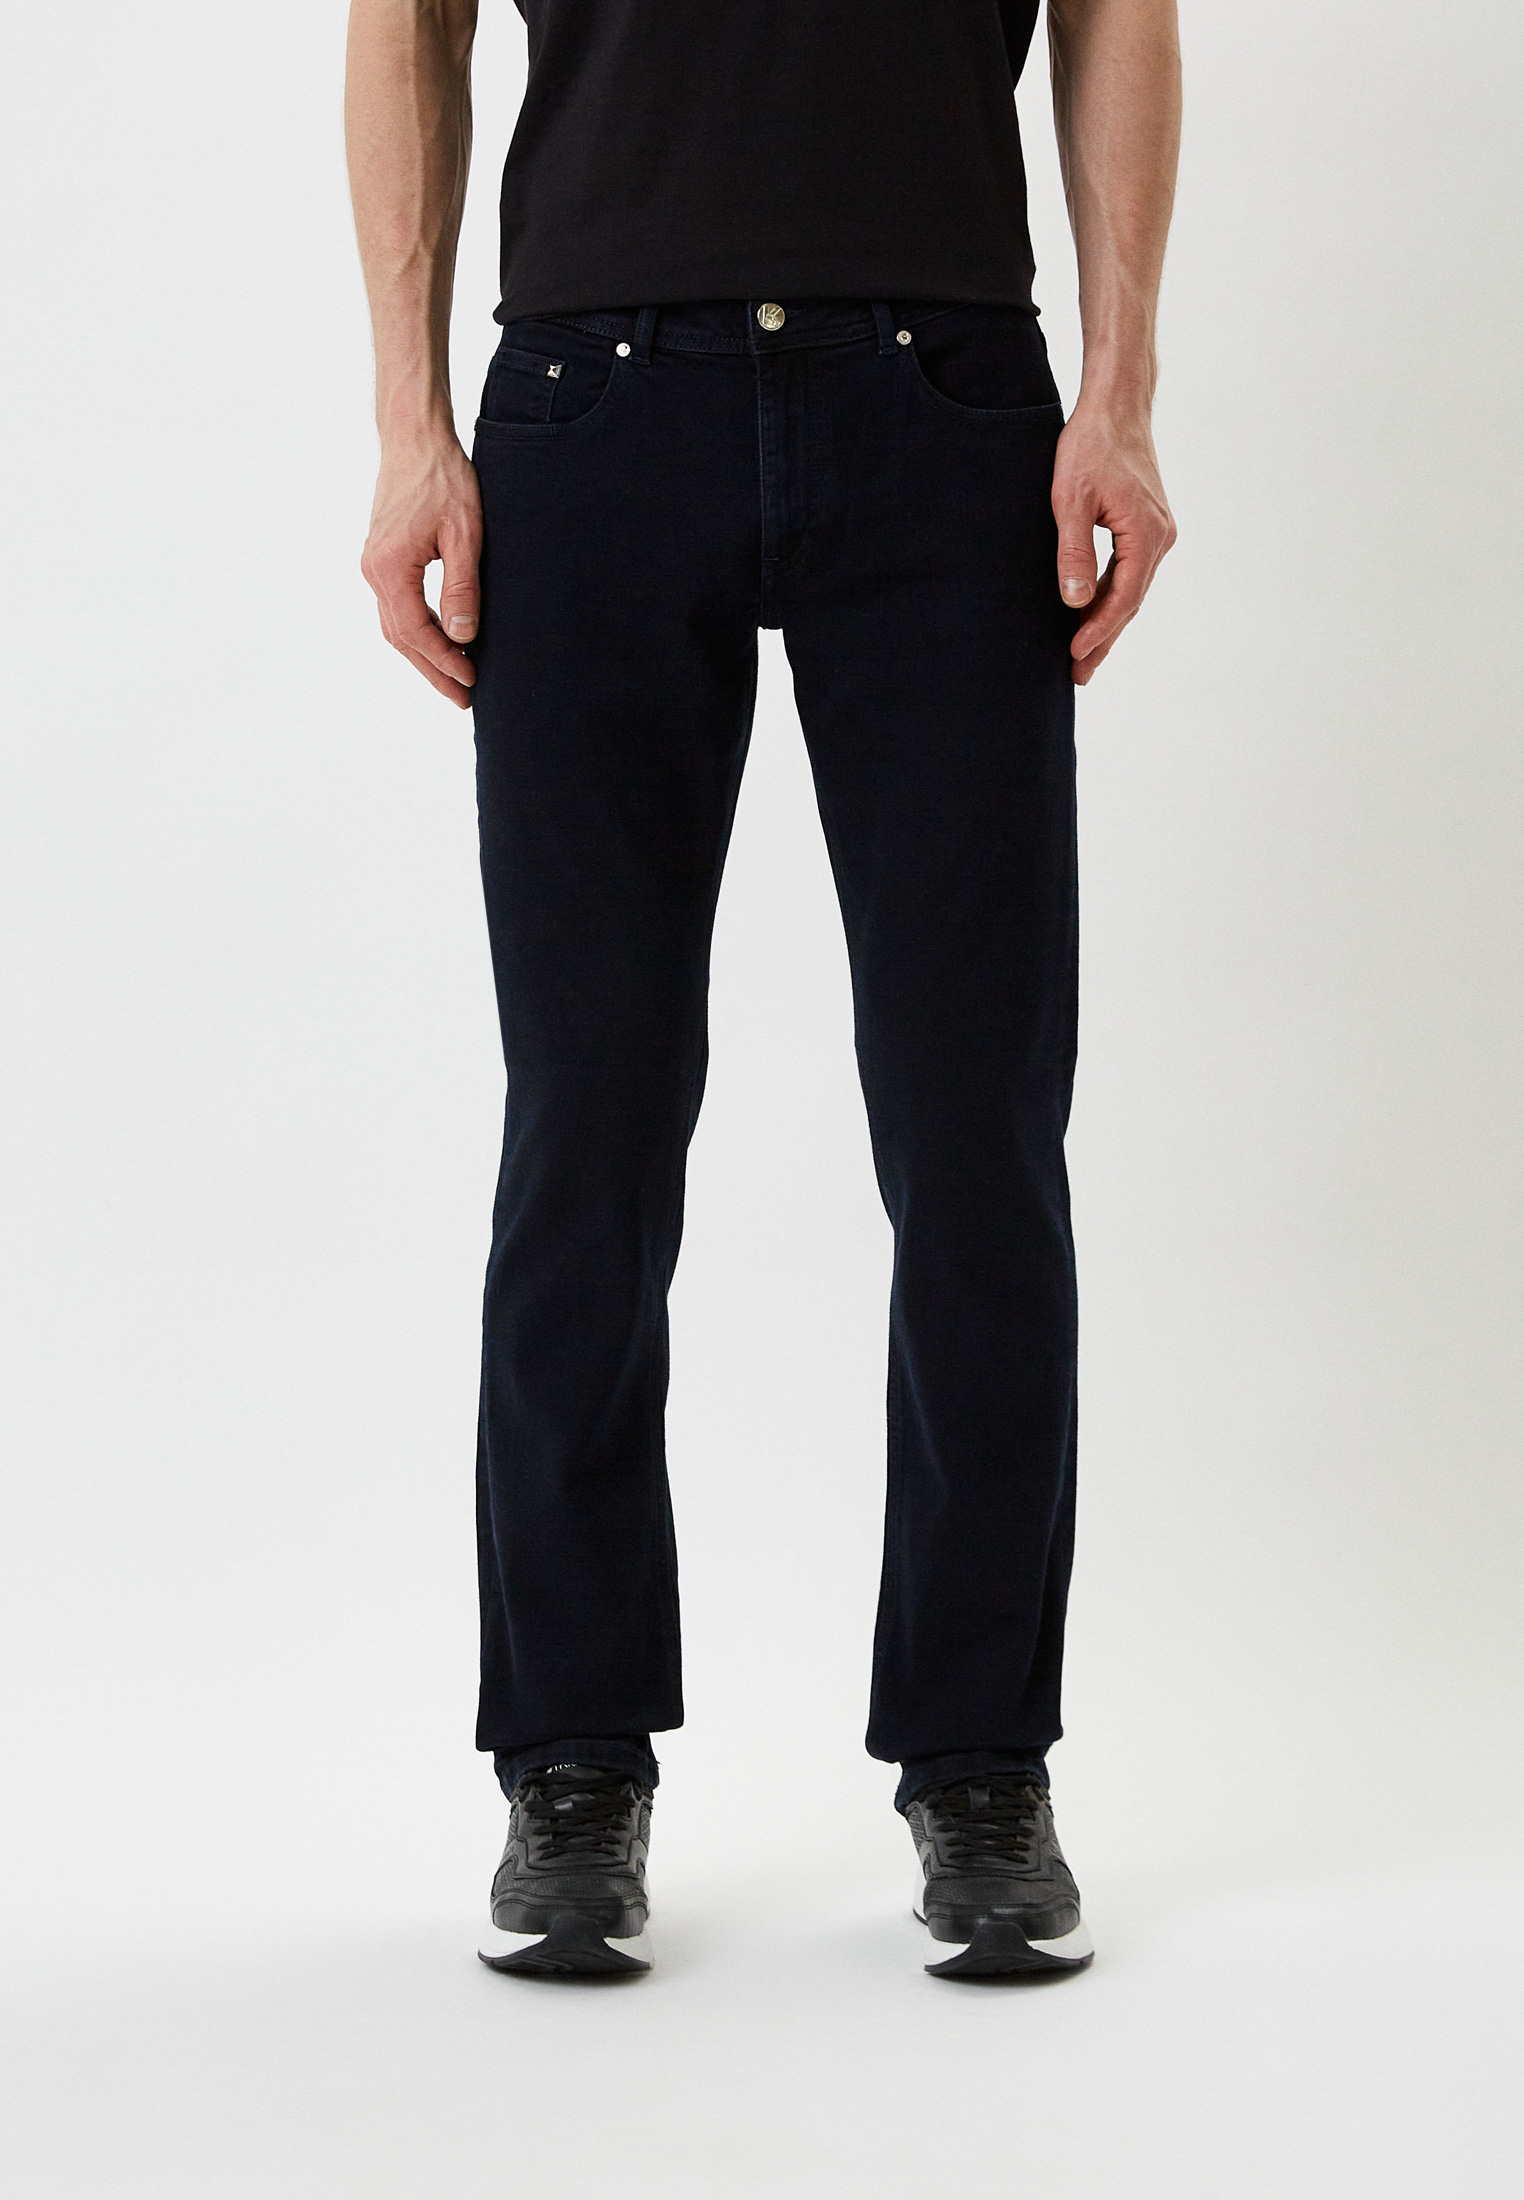 Мужские зауженные джинсы Karl Lagerfeld (Карл Лагерфельд) 521830-265840: изображение 1